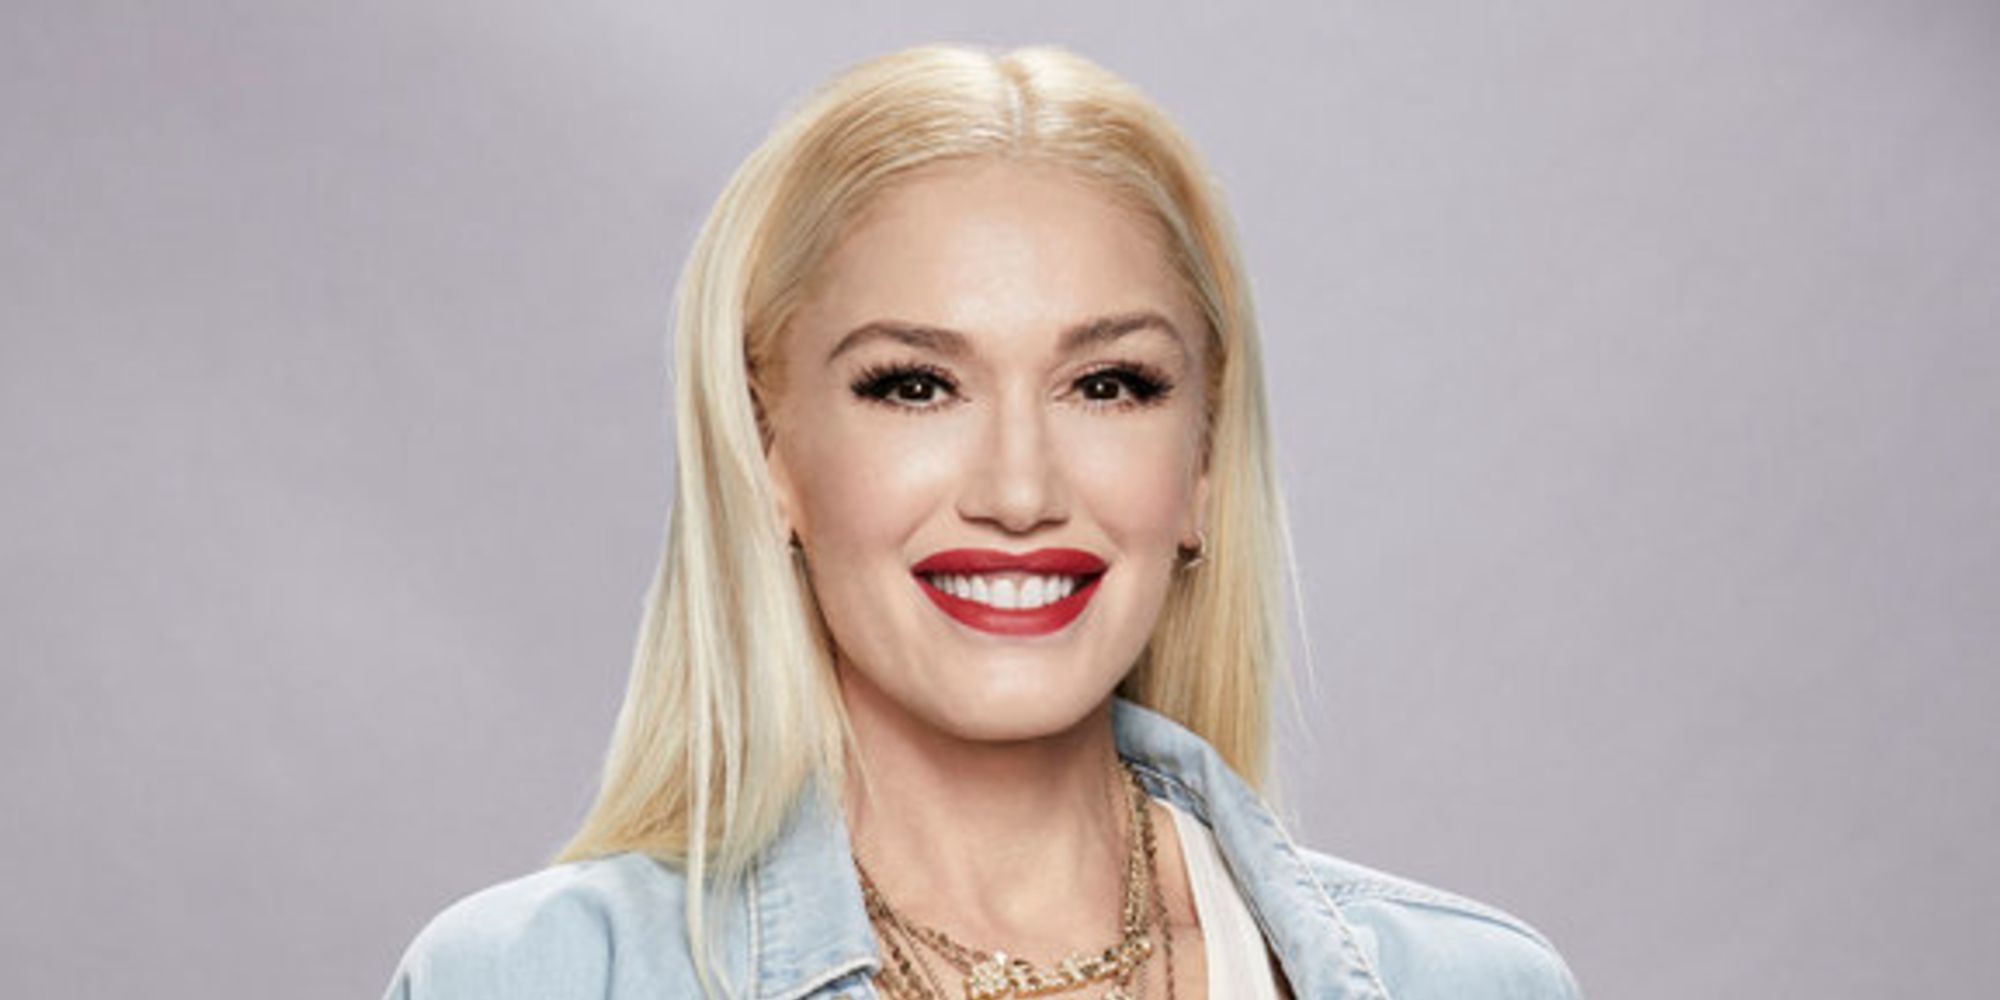 Gwen Stefani on The Voice season 19